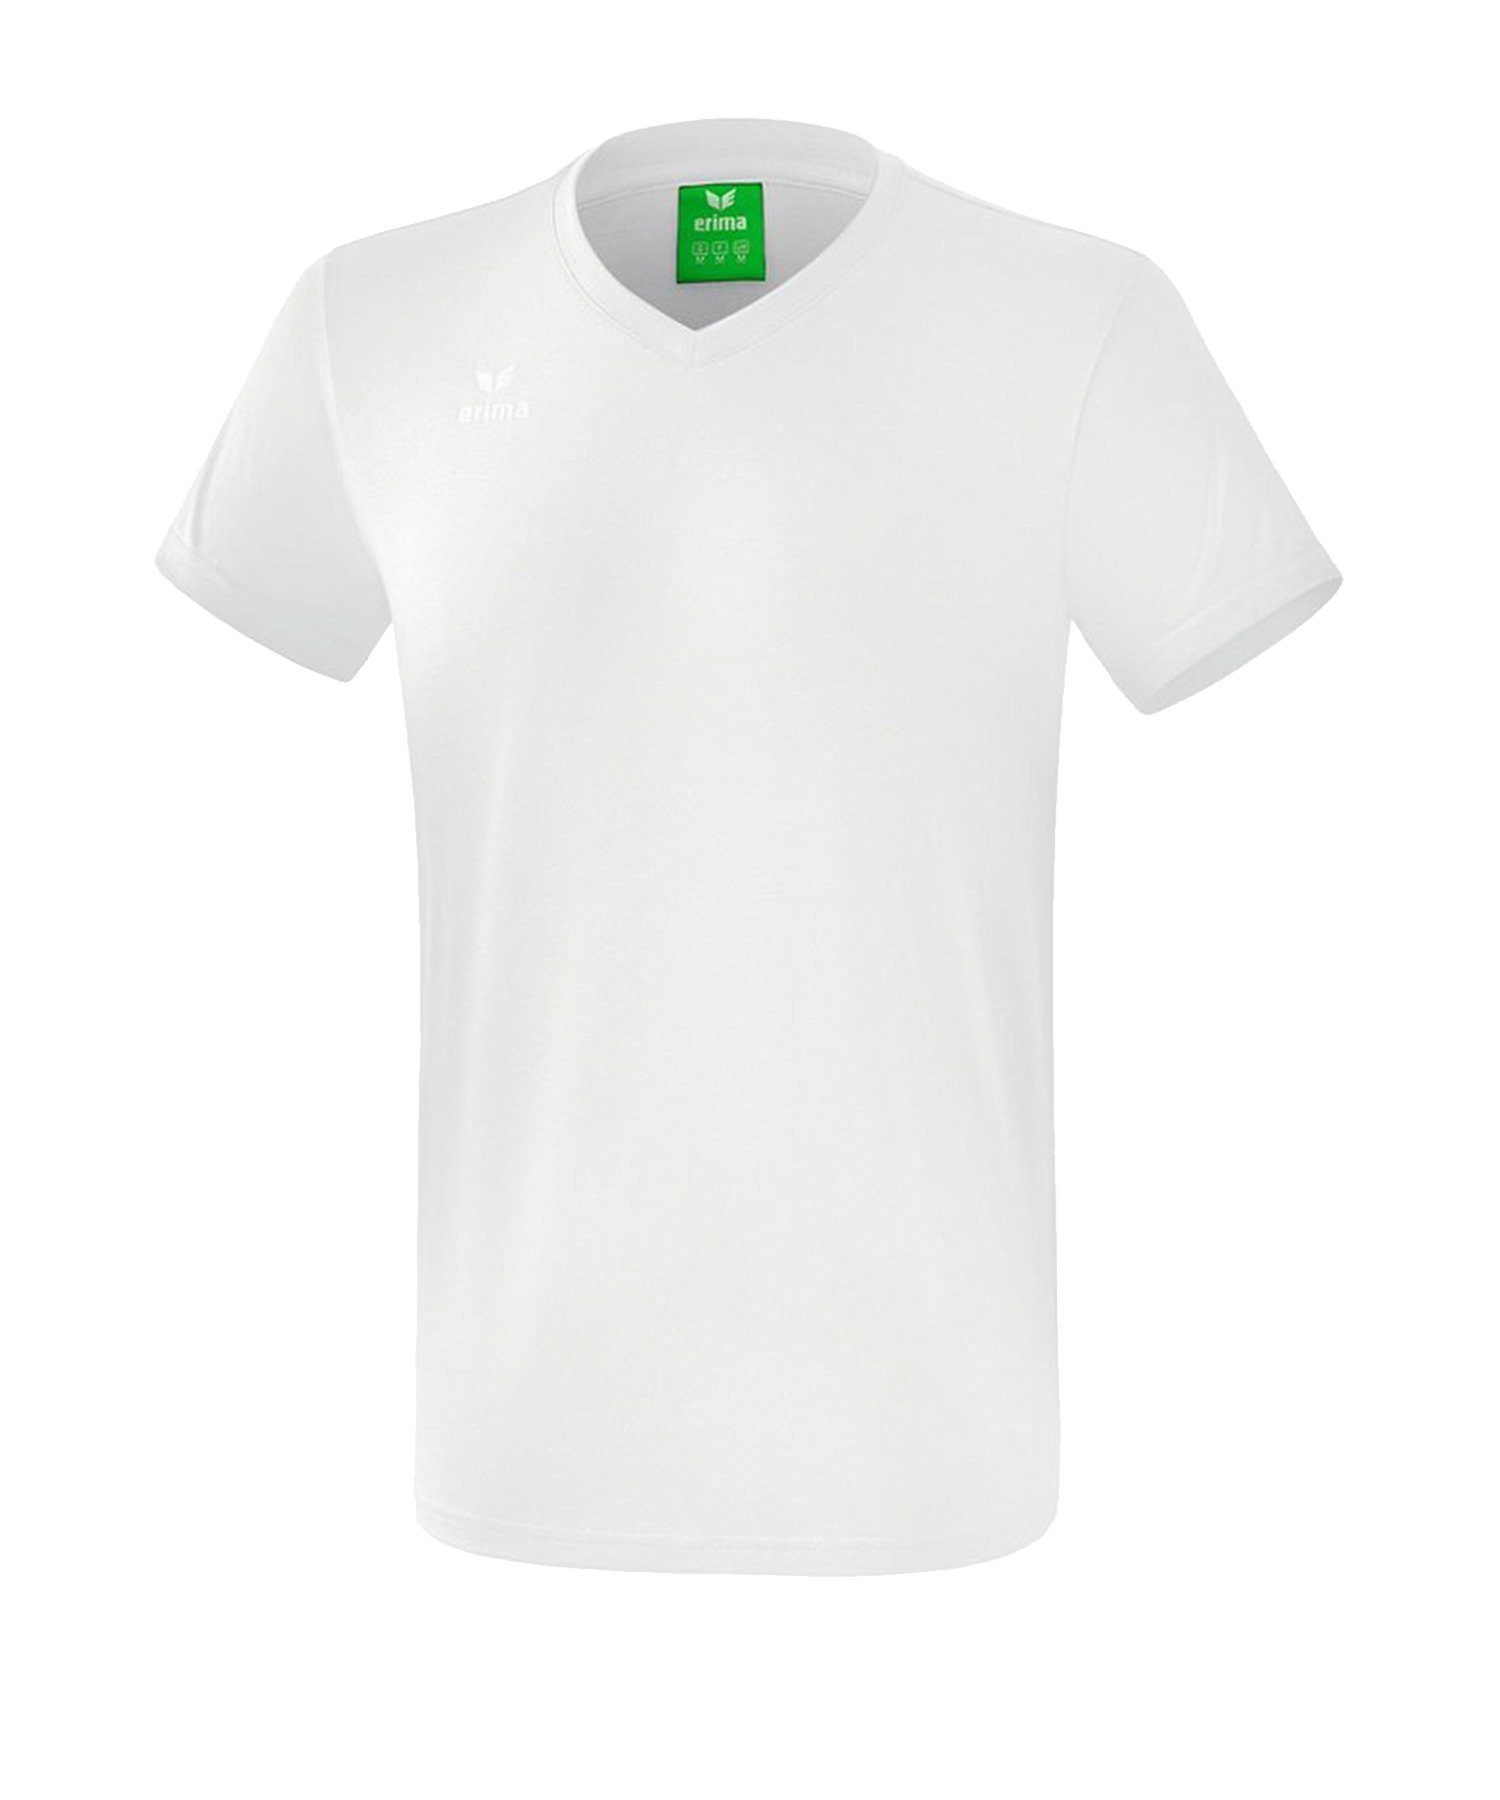 Erima T-Shirt Style T-Shirt Weiss default